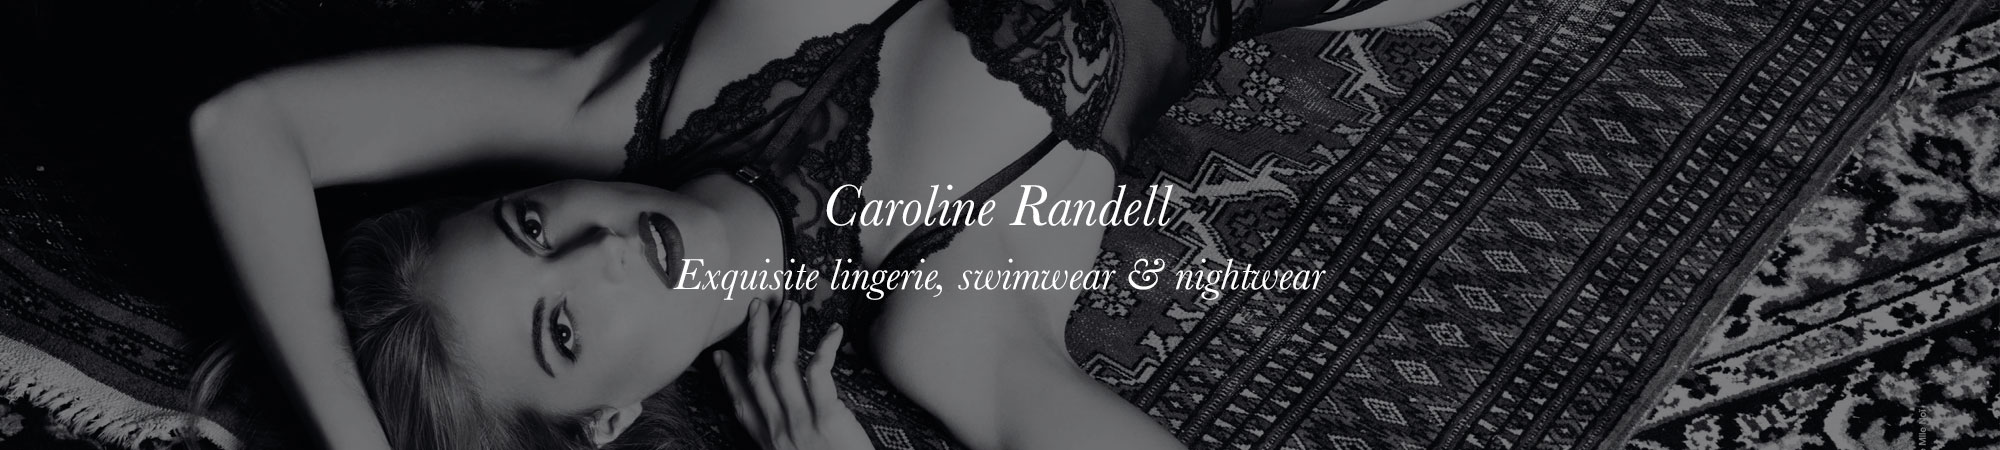 Caroline Randell